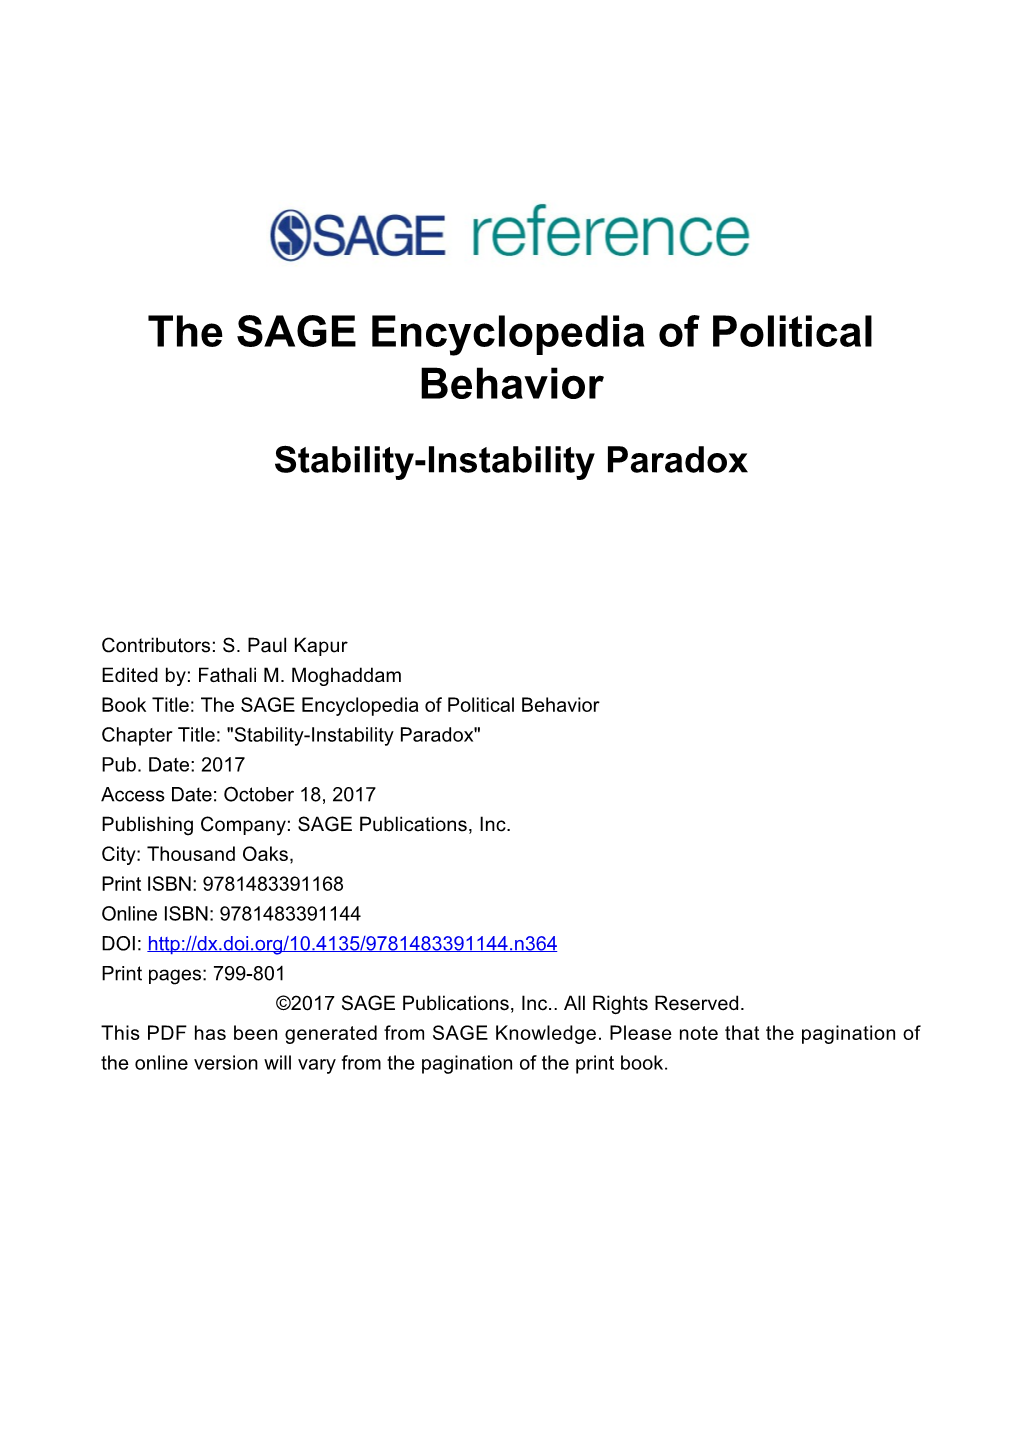 Stability-Instability Paradox